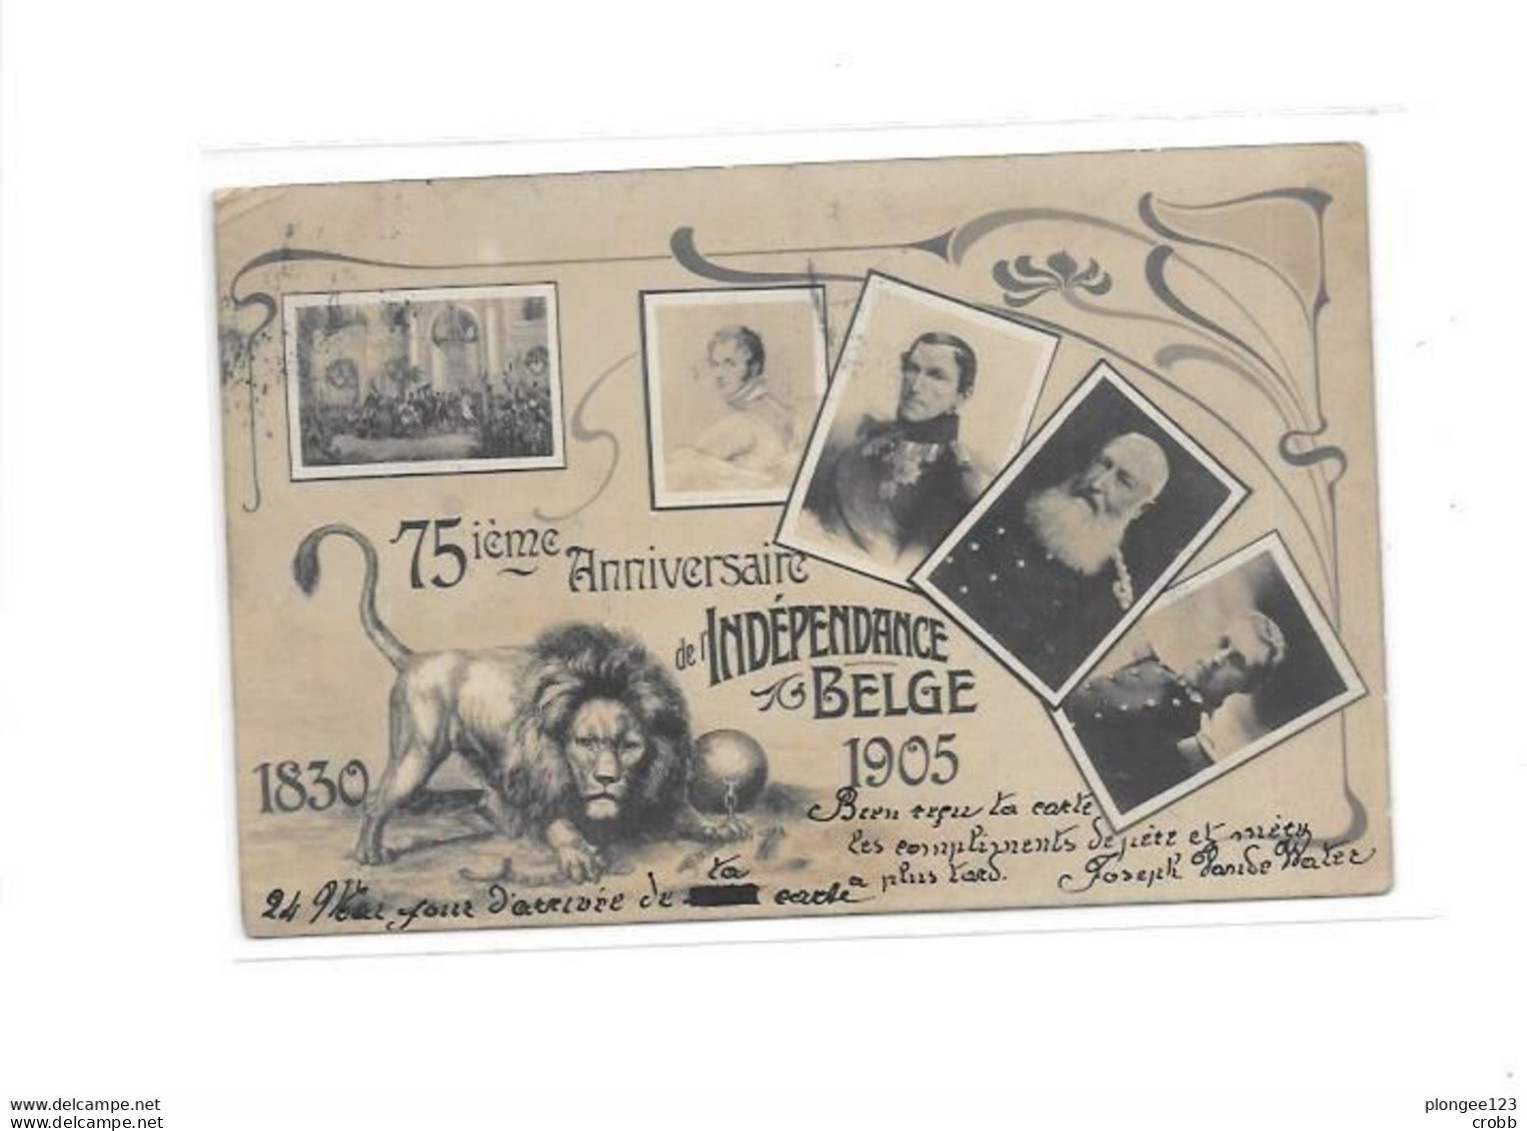 75 Ième Anniversaire De L'Indépendance BELGE 1905 - Feesten En Evenementen